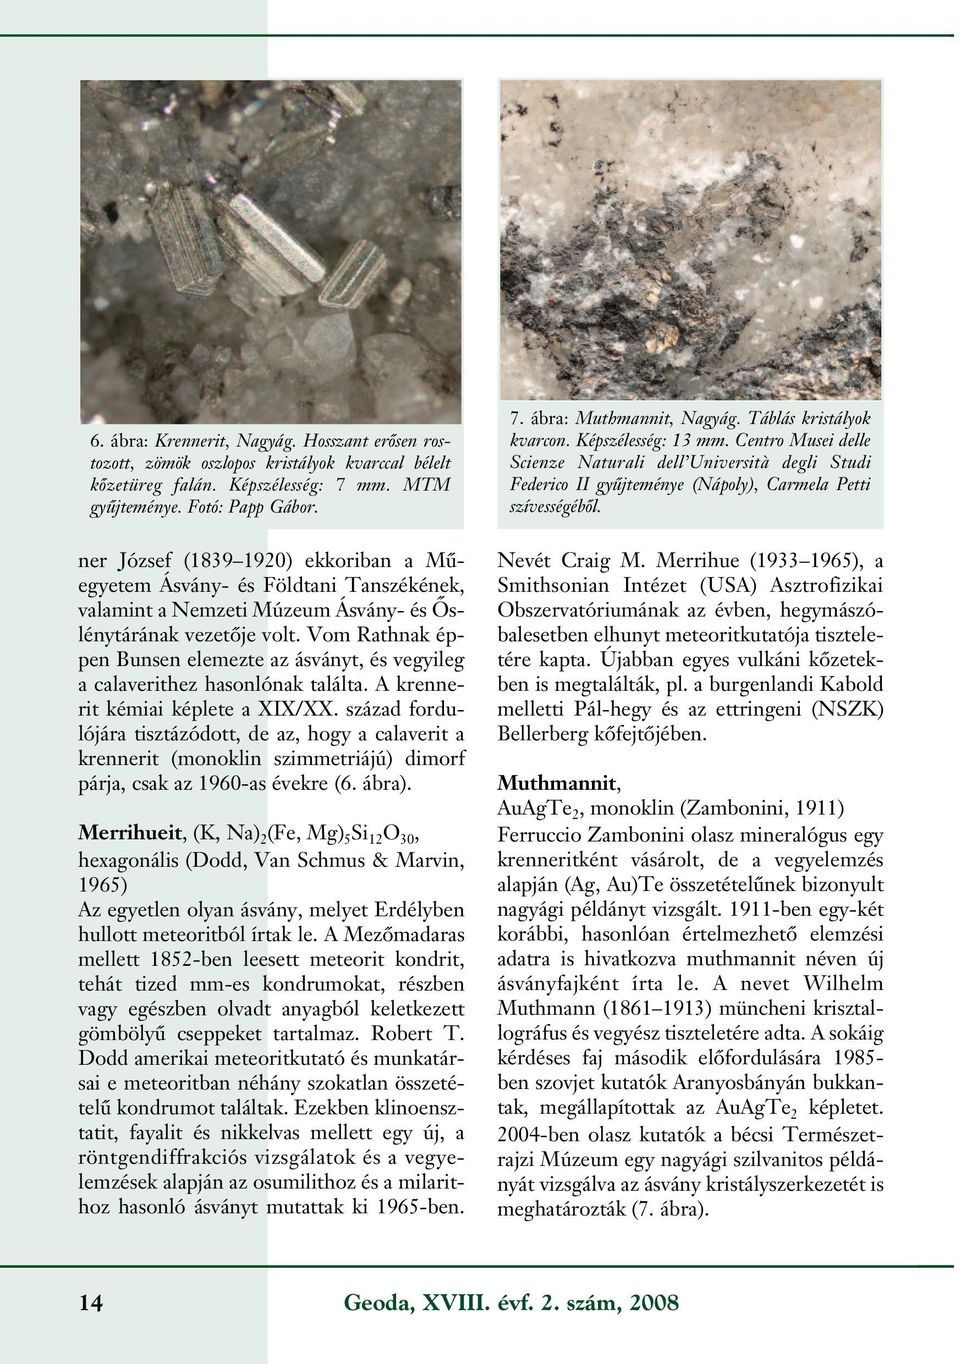 Vom Rathnak éppen Bunsen elemezte az ásványt, és vegyileg a calaverithez hasonlónak találta. A krennerit kémiai képlete a XIX/XX.